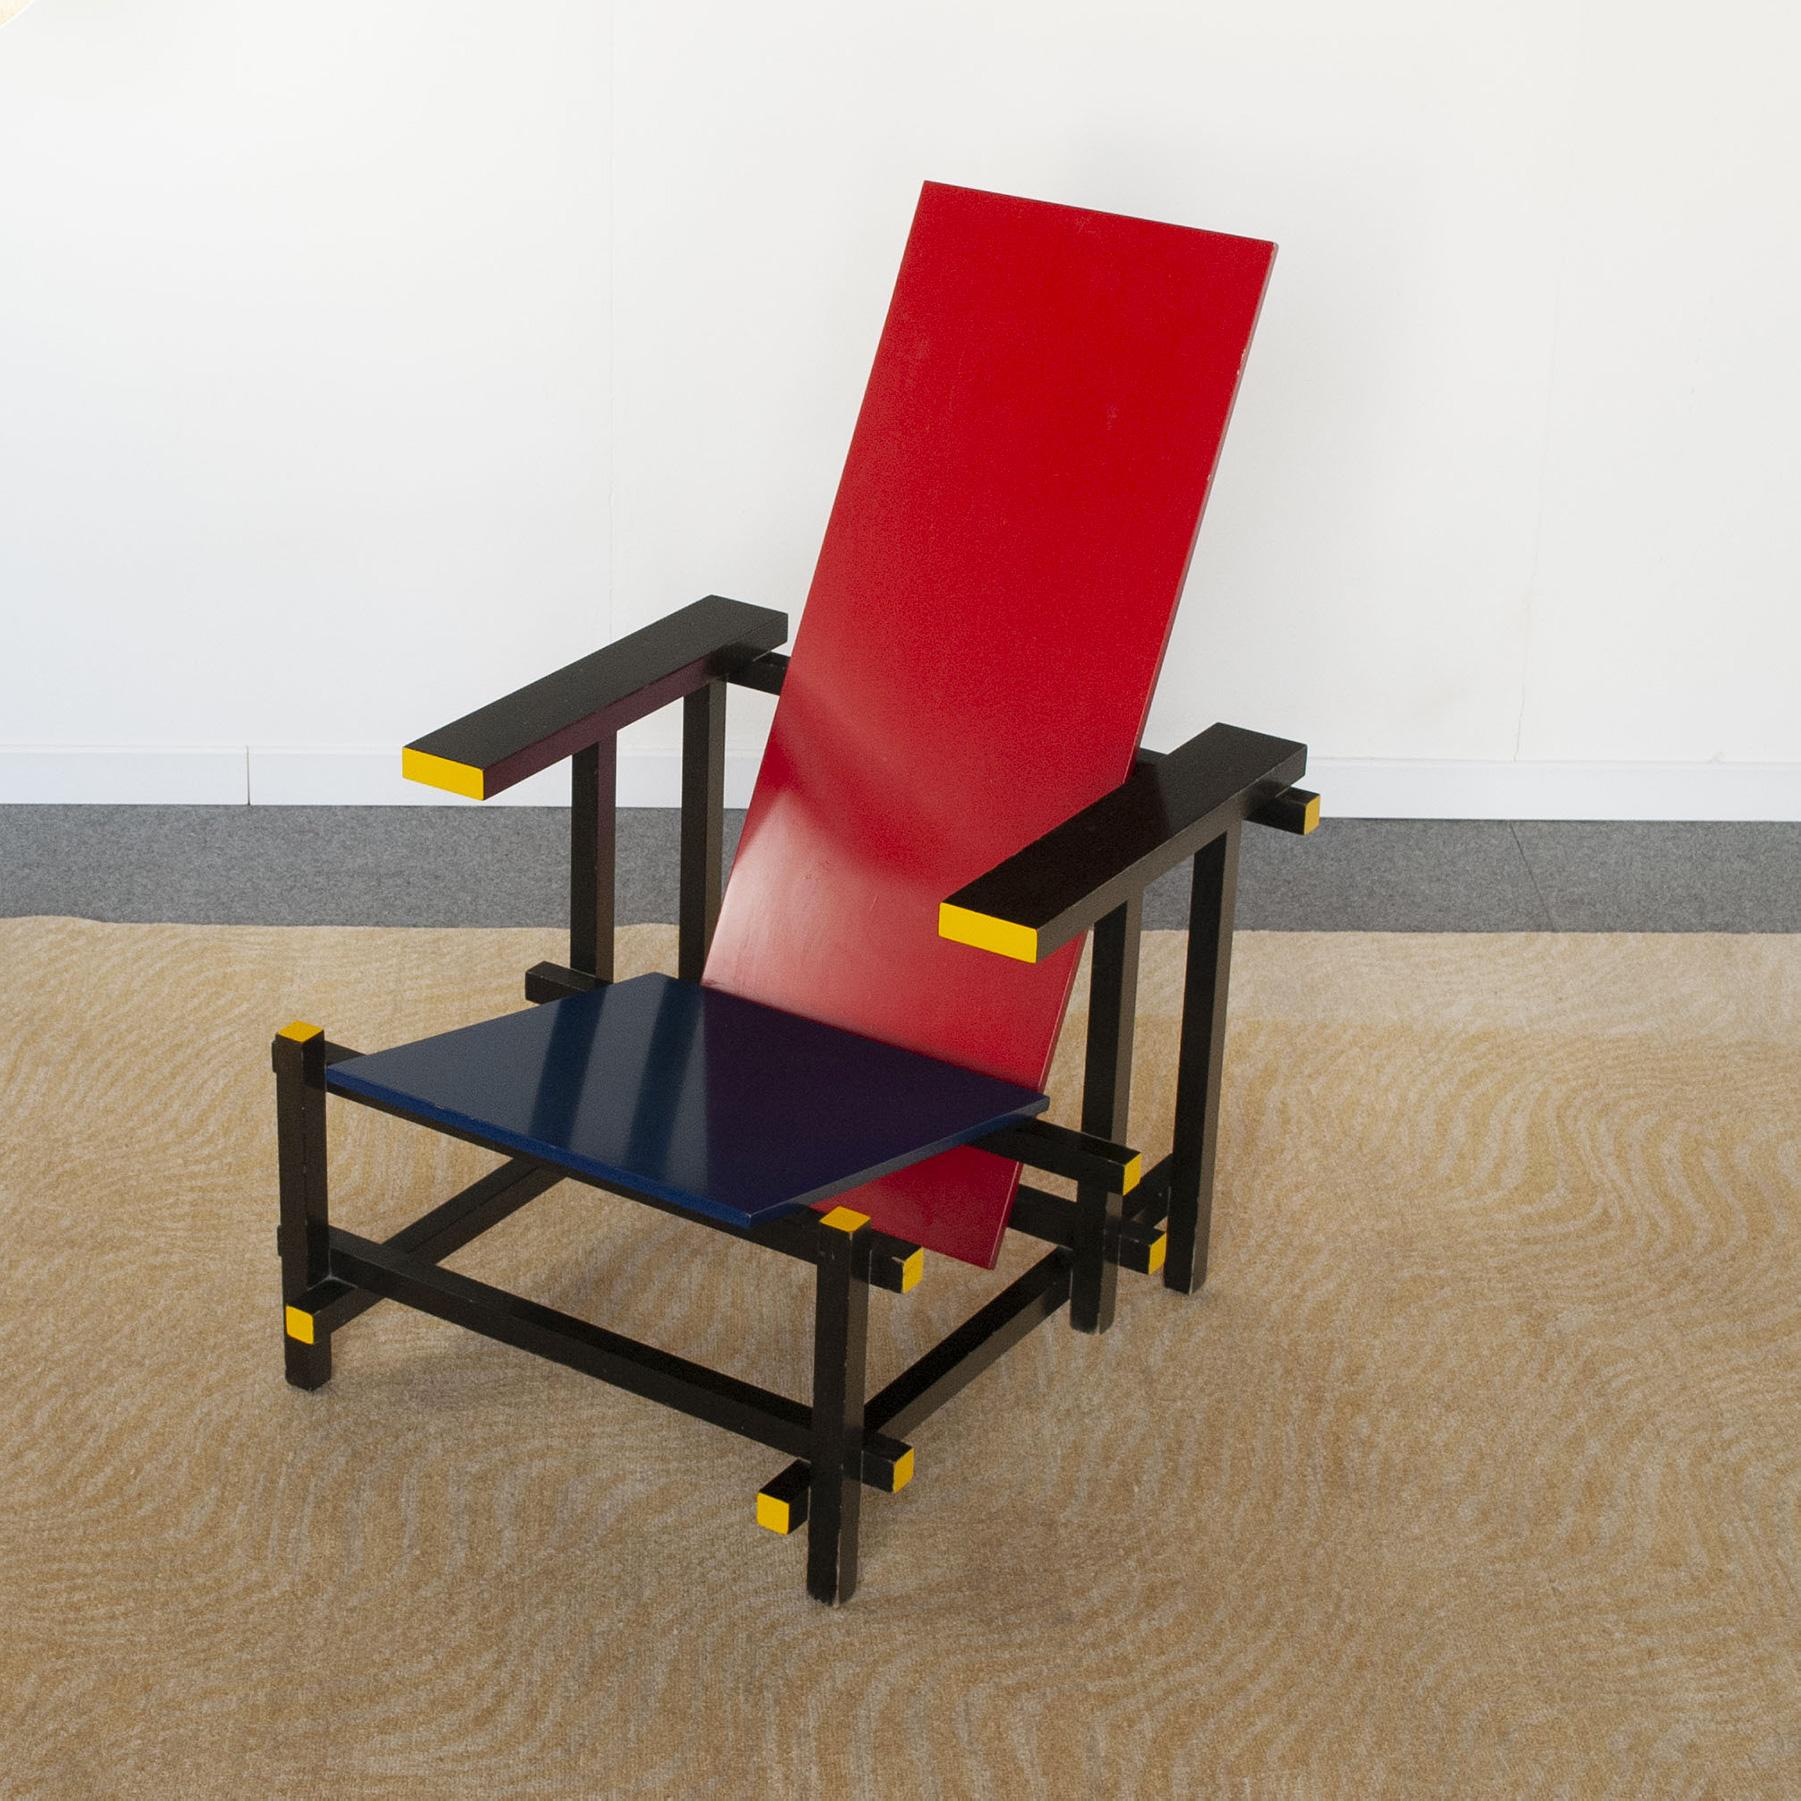 Icône mondiale du design néo-plasticiste, ce fauteuil appelé Rood Blauwe (Rouge et Bleu) par son concepteur néerlandais Gerrit Thomas Rietveld, est produit par Cassina dans les années 1960.